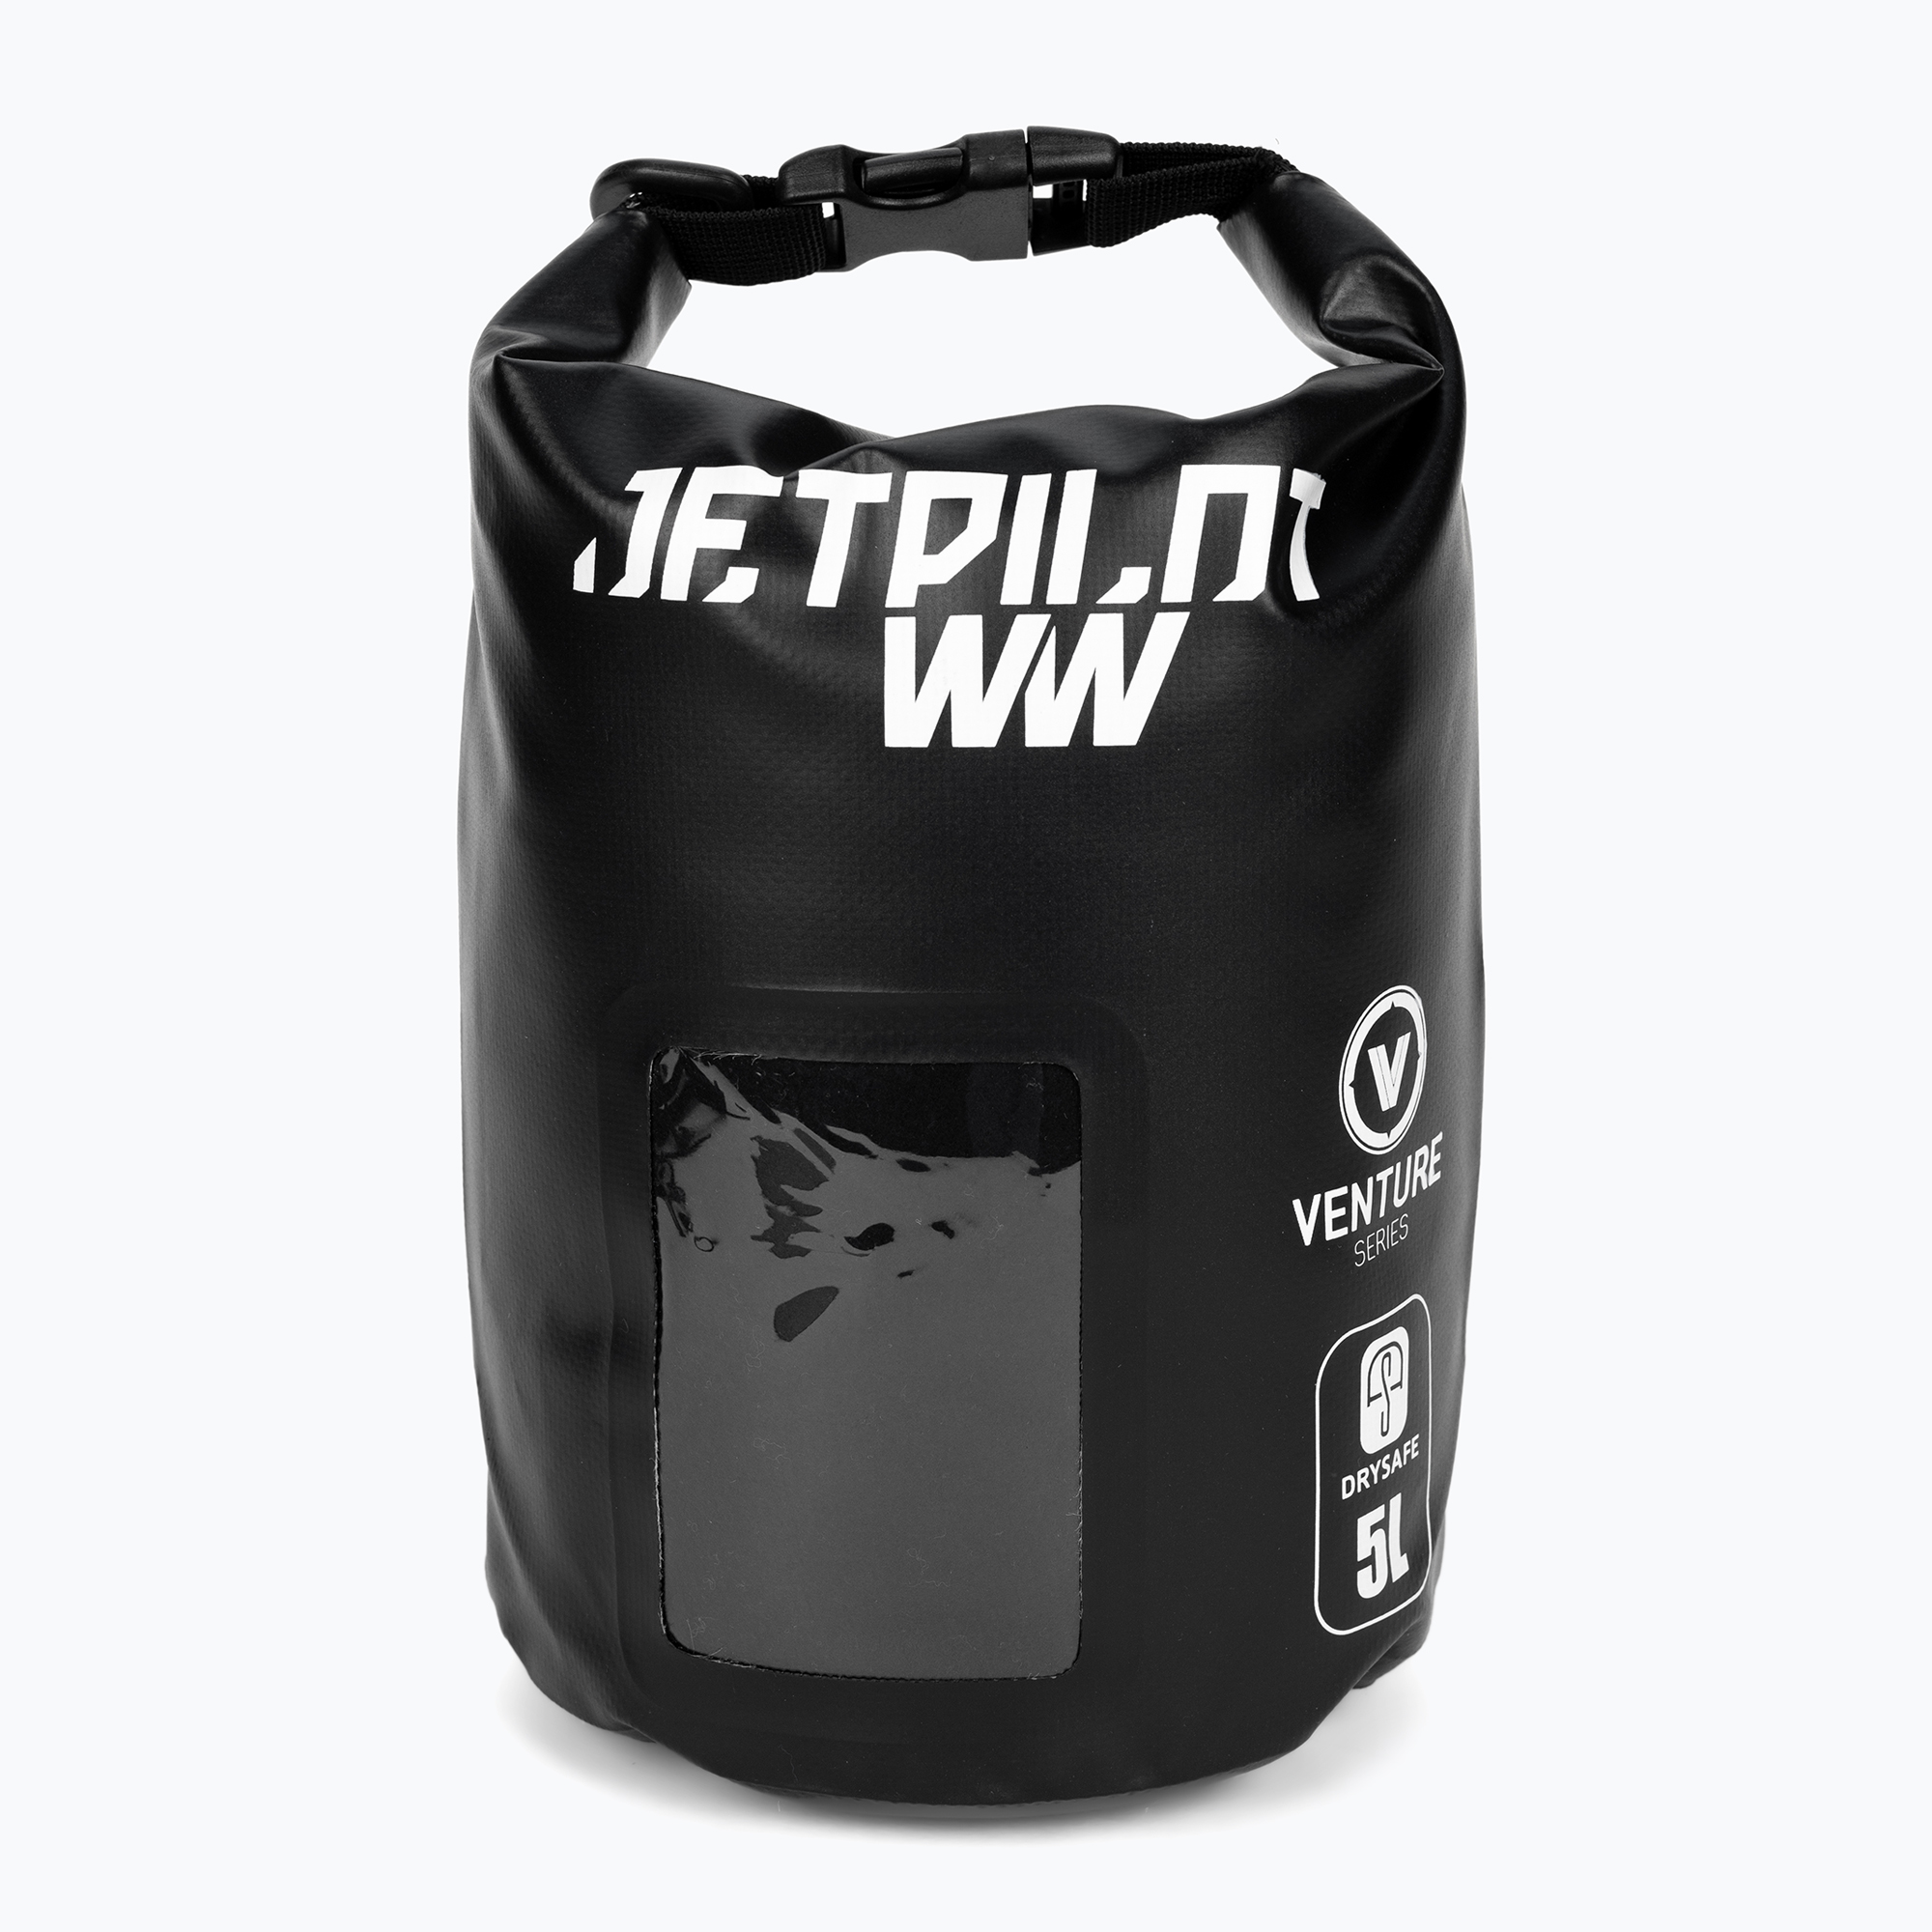 Jetpilot Venture Venture Drysafe sac impermeabil negru 19111